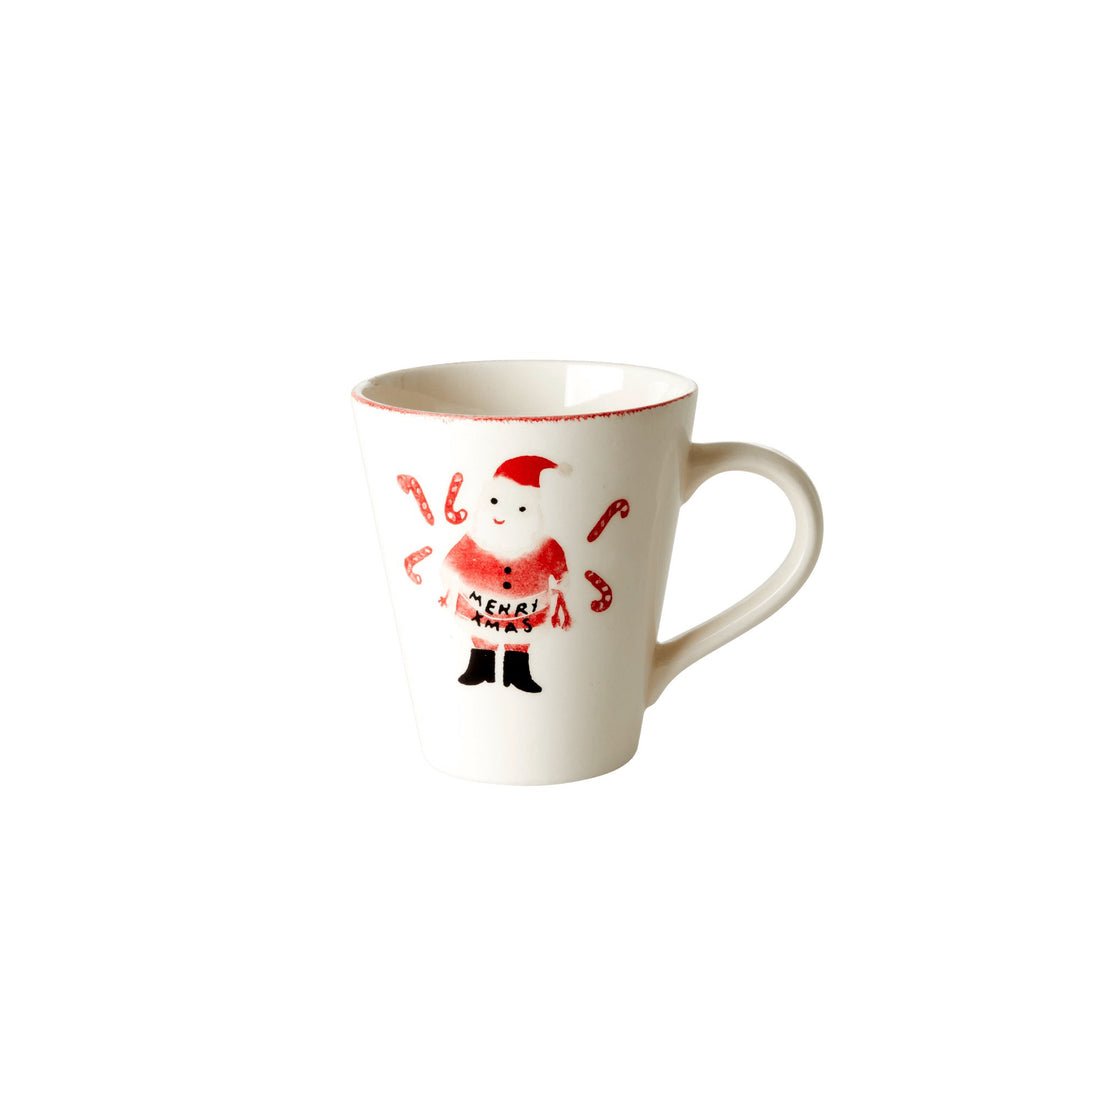 rice-dk-ceramic-mug-with-santa-and-candy-cane-print-rice-cemug-saca- (1)